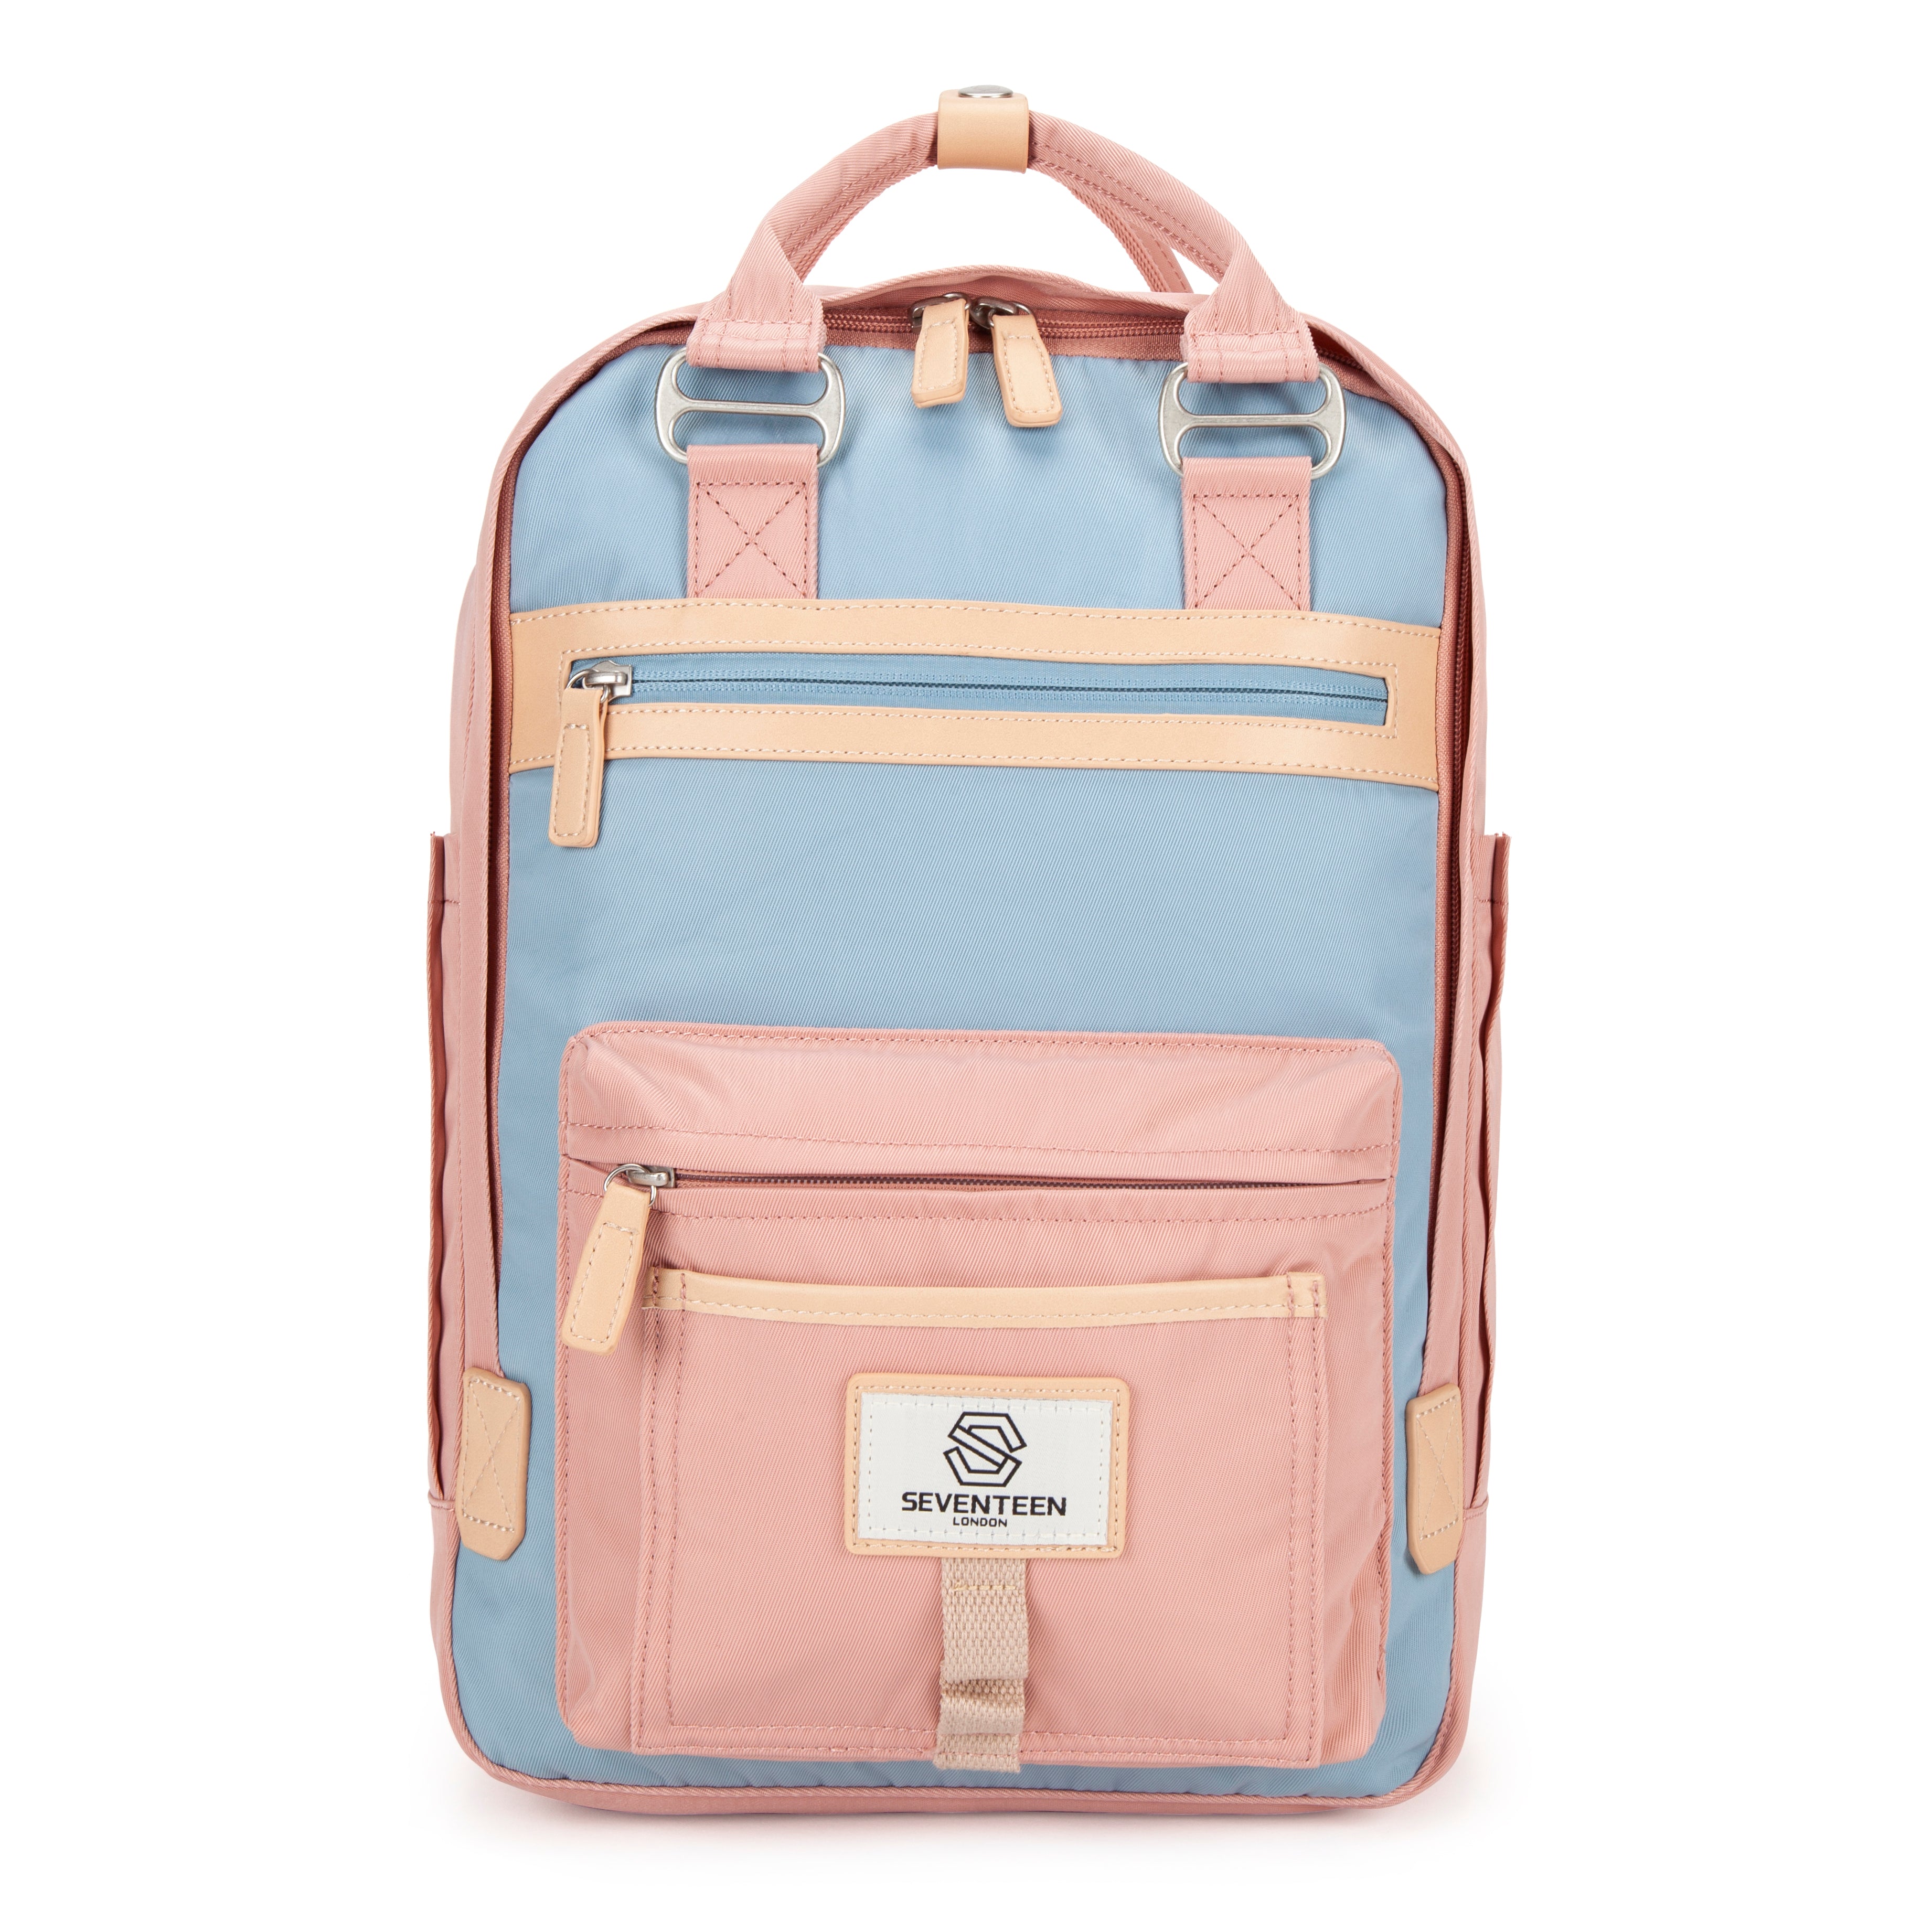 Wimbledon Backpack - Pink with Light Blue - Seventeen London